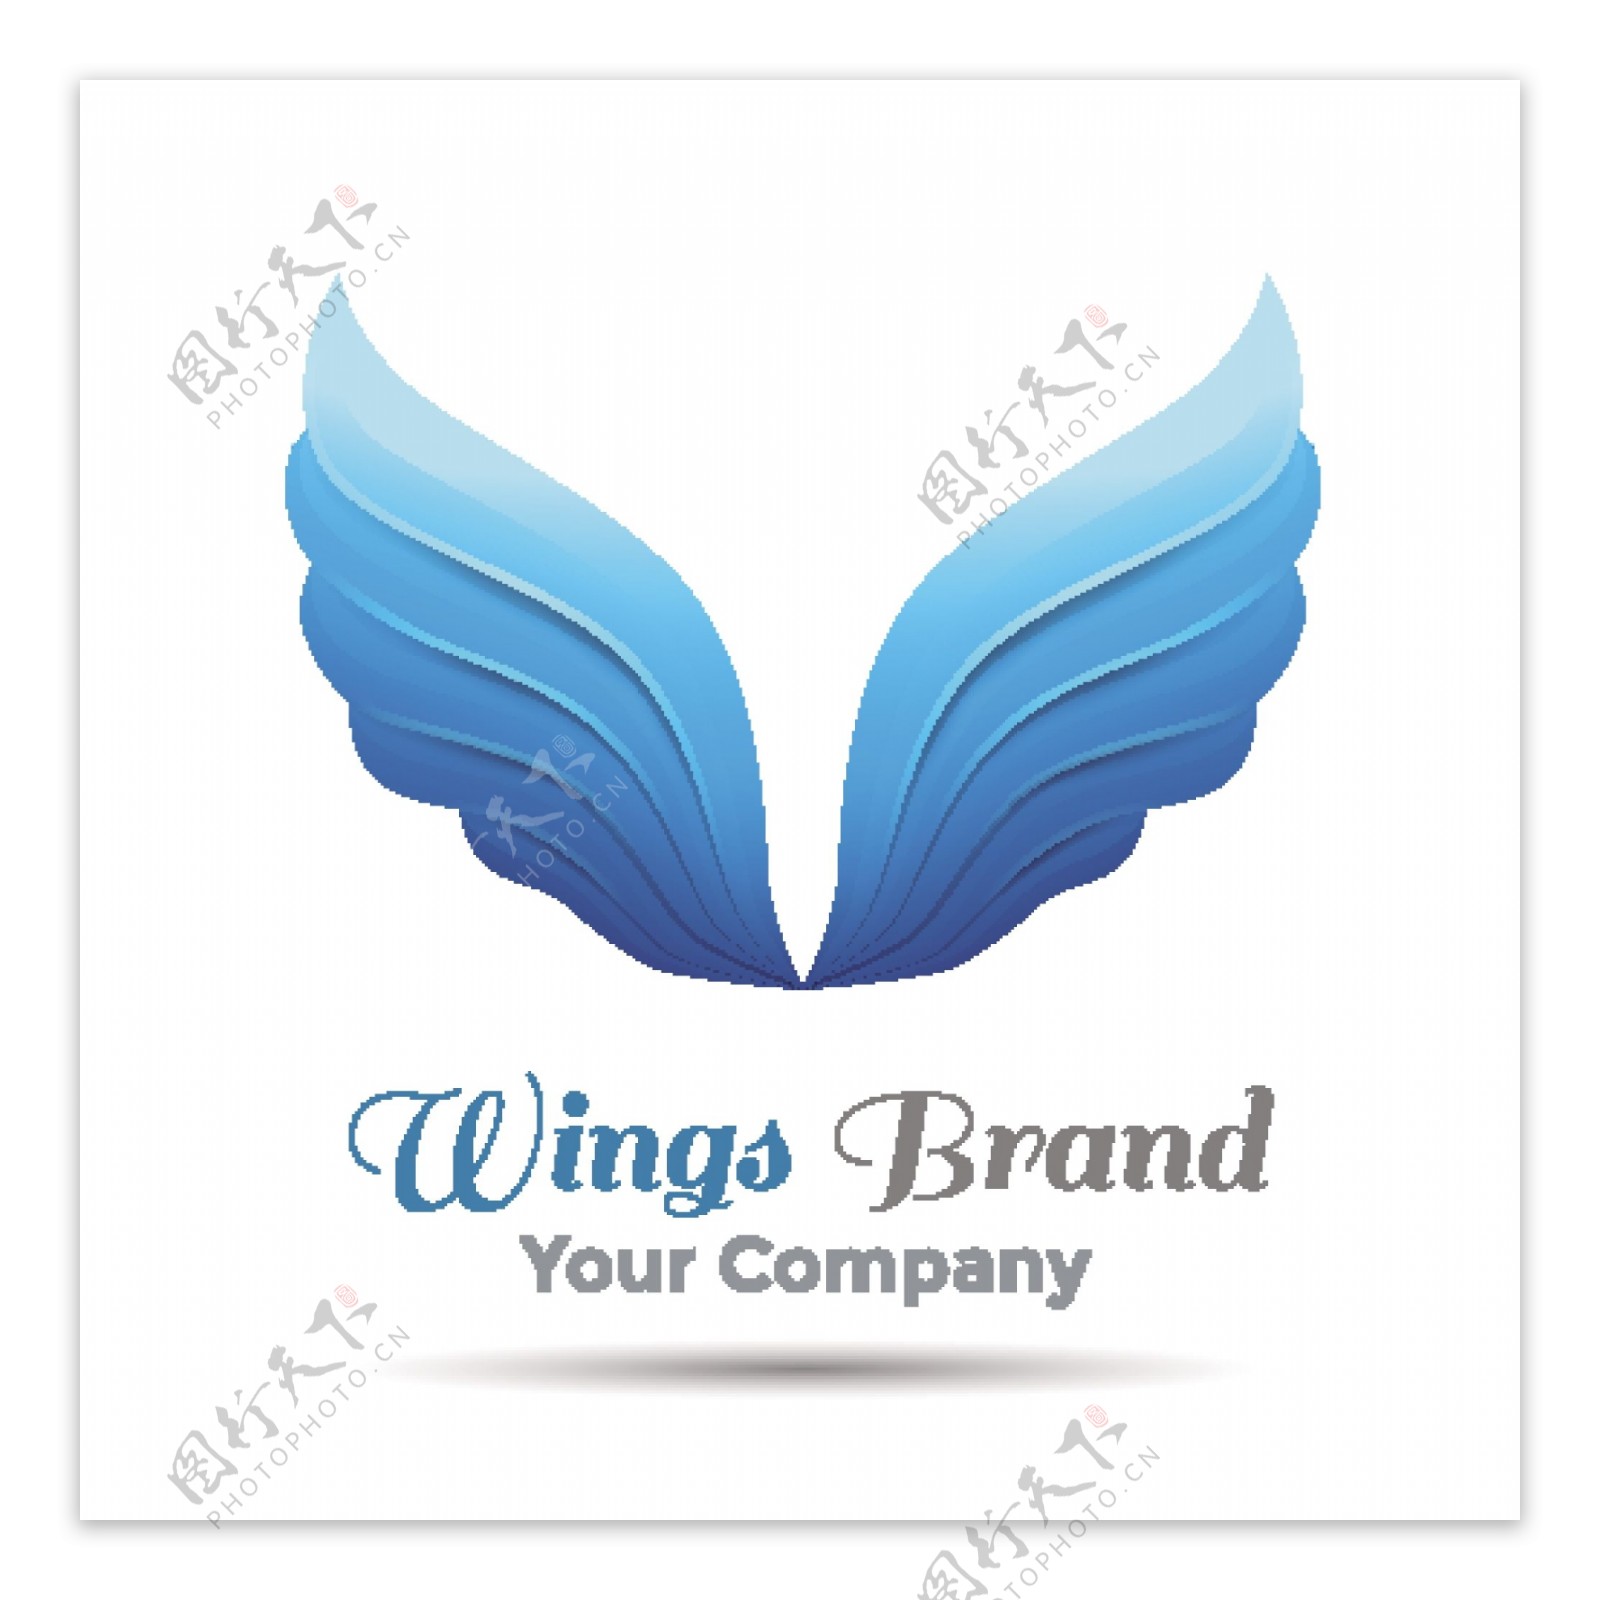 蓝色翅膀品牌标志设计矢量素材下载